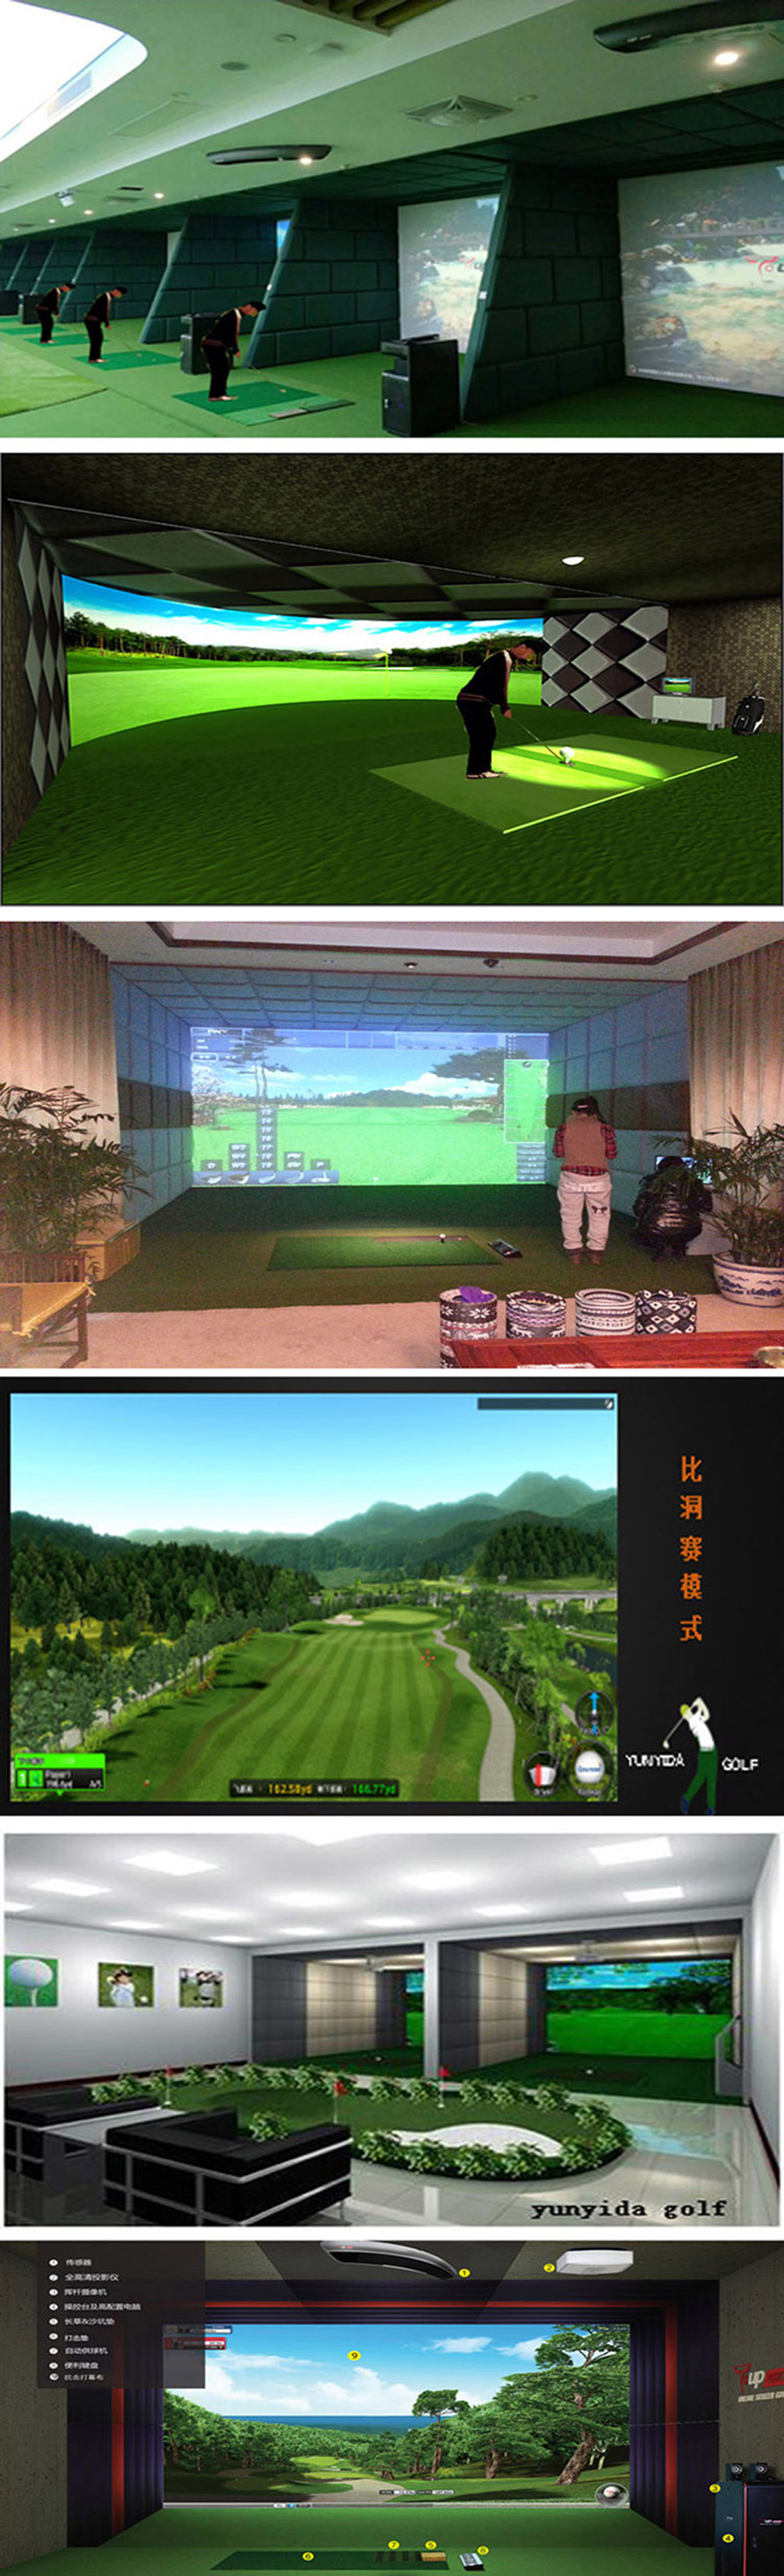 高尔夫模拟室内练习 04.jpg